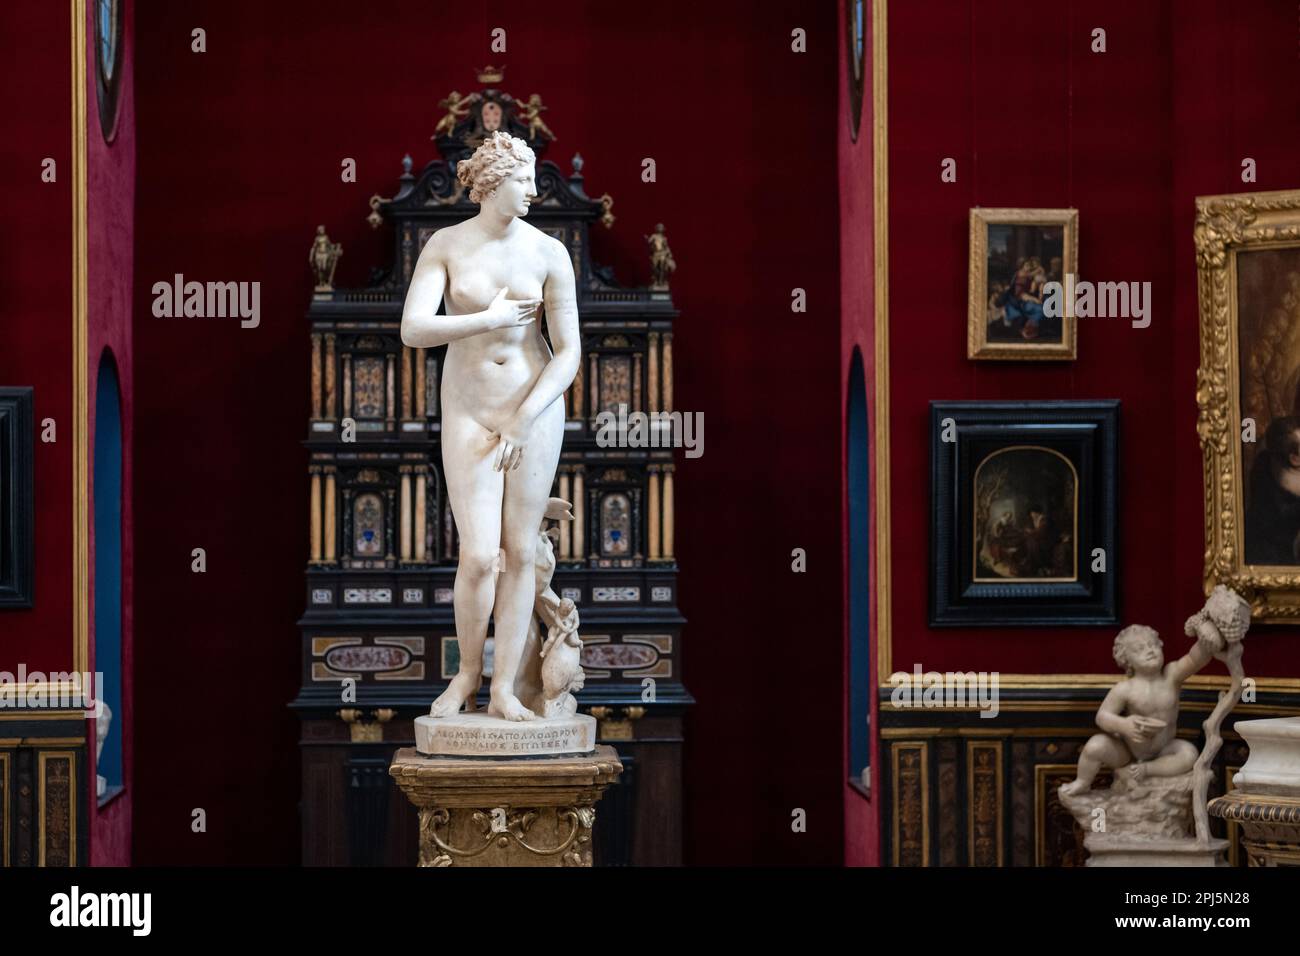 Tribuna, sala ottagonale degli Uffizi che ospita opere d'arte della collezione medicea, tra cui la Venere medicea, gli Uffizi, Firenze Foto Stock